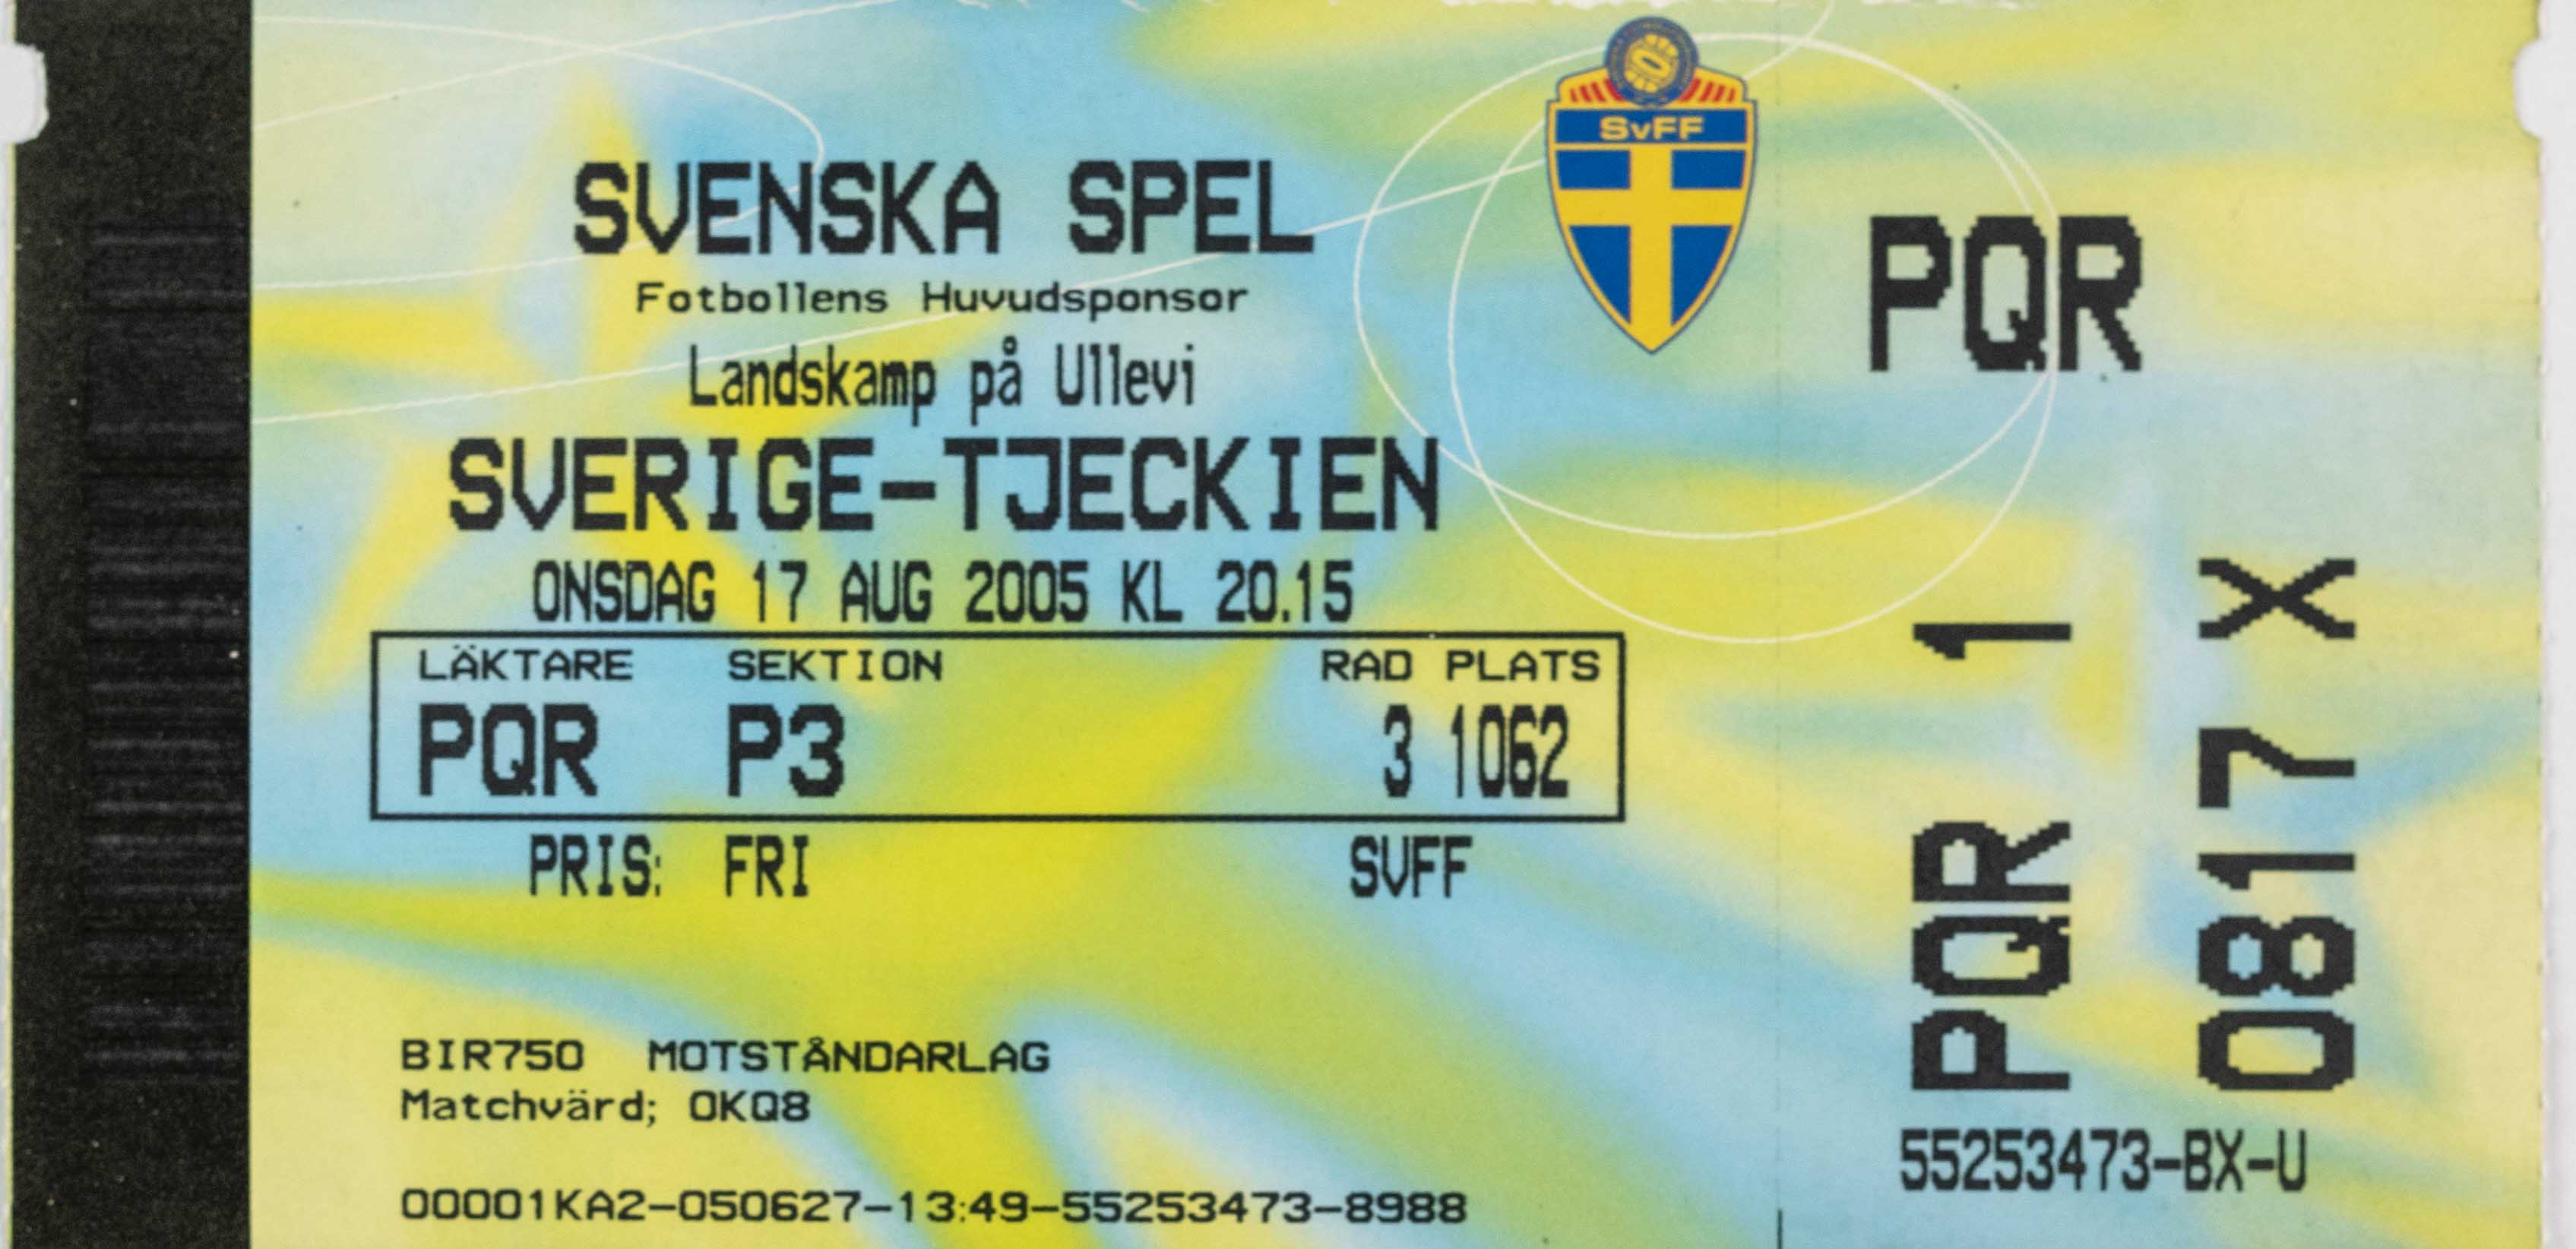 Vstupenka fotbal , Sverige v. Tjeckien, 2005